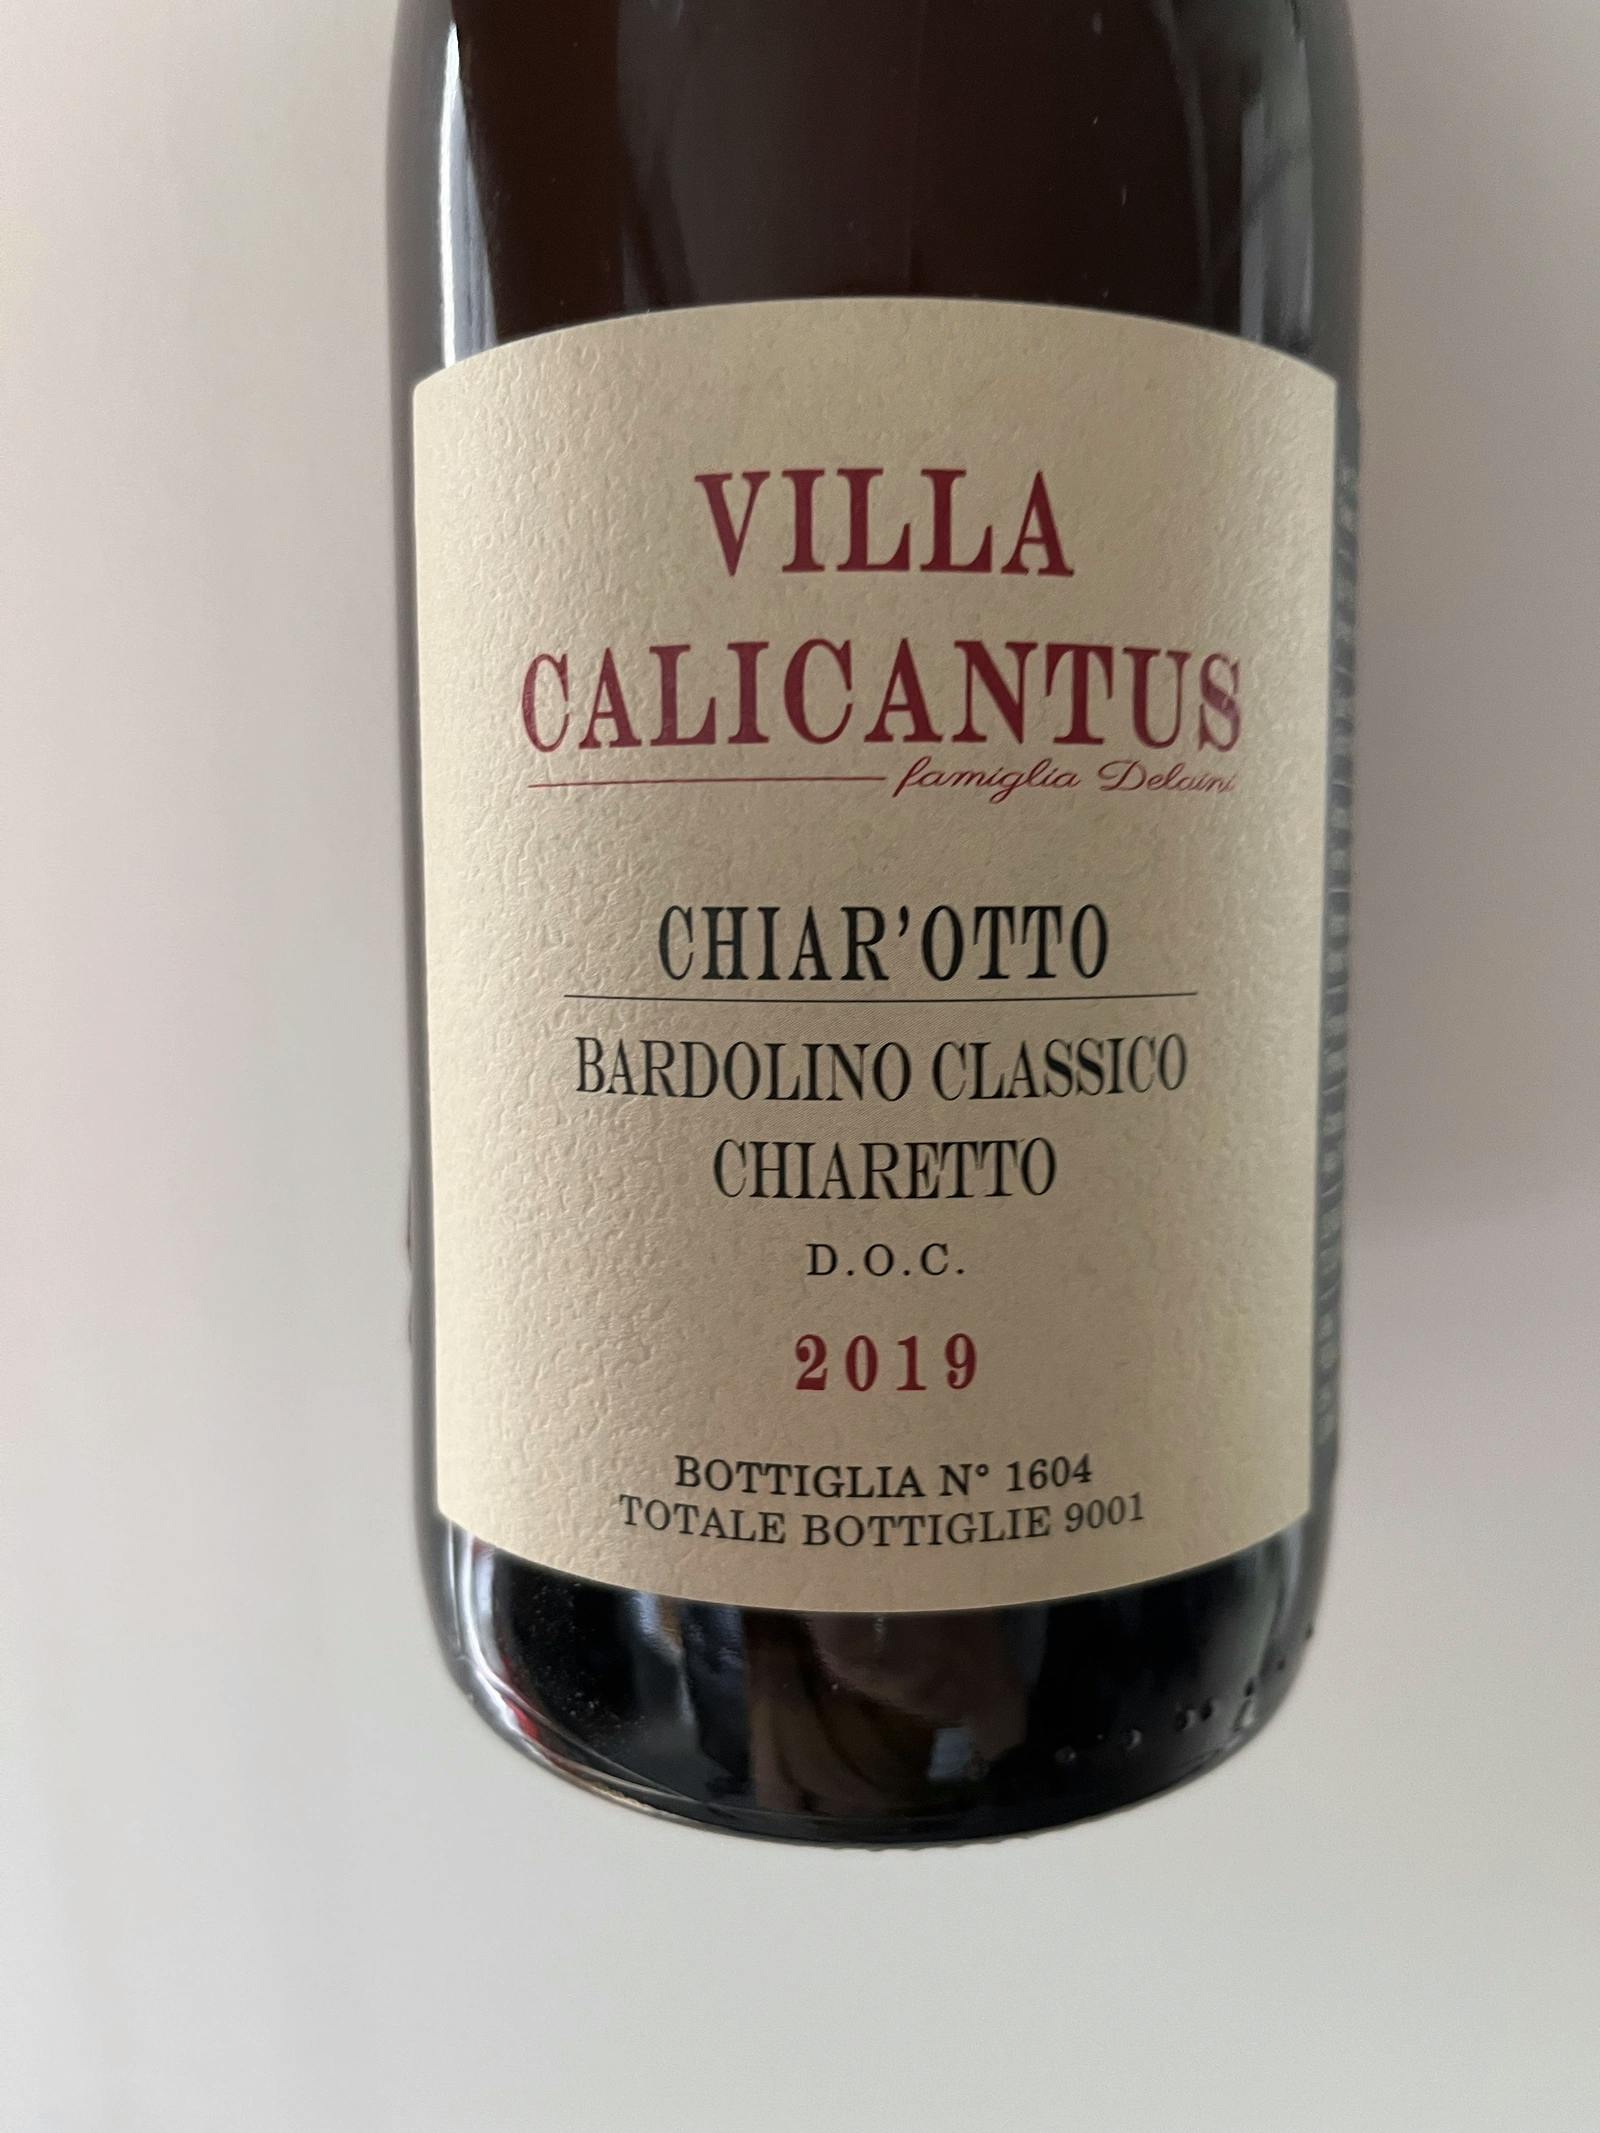 Villa Calicantus Chiar'otto Bardolino Classico Chiaretto 2019